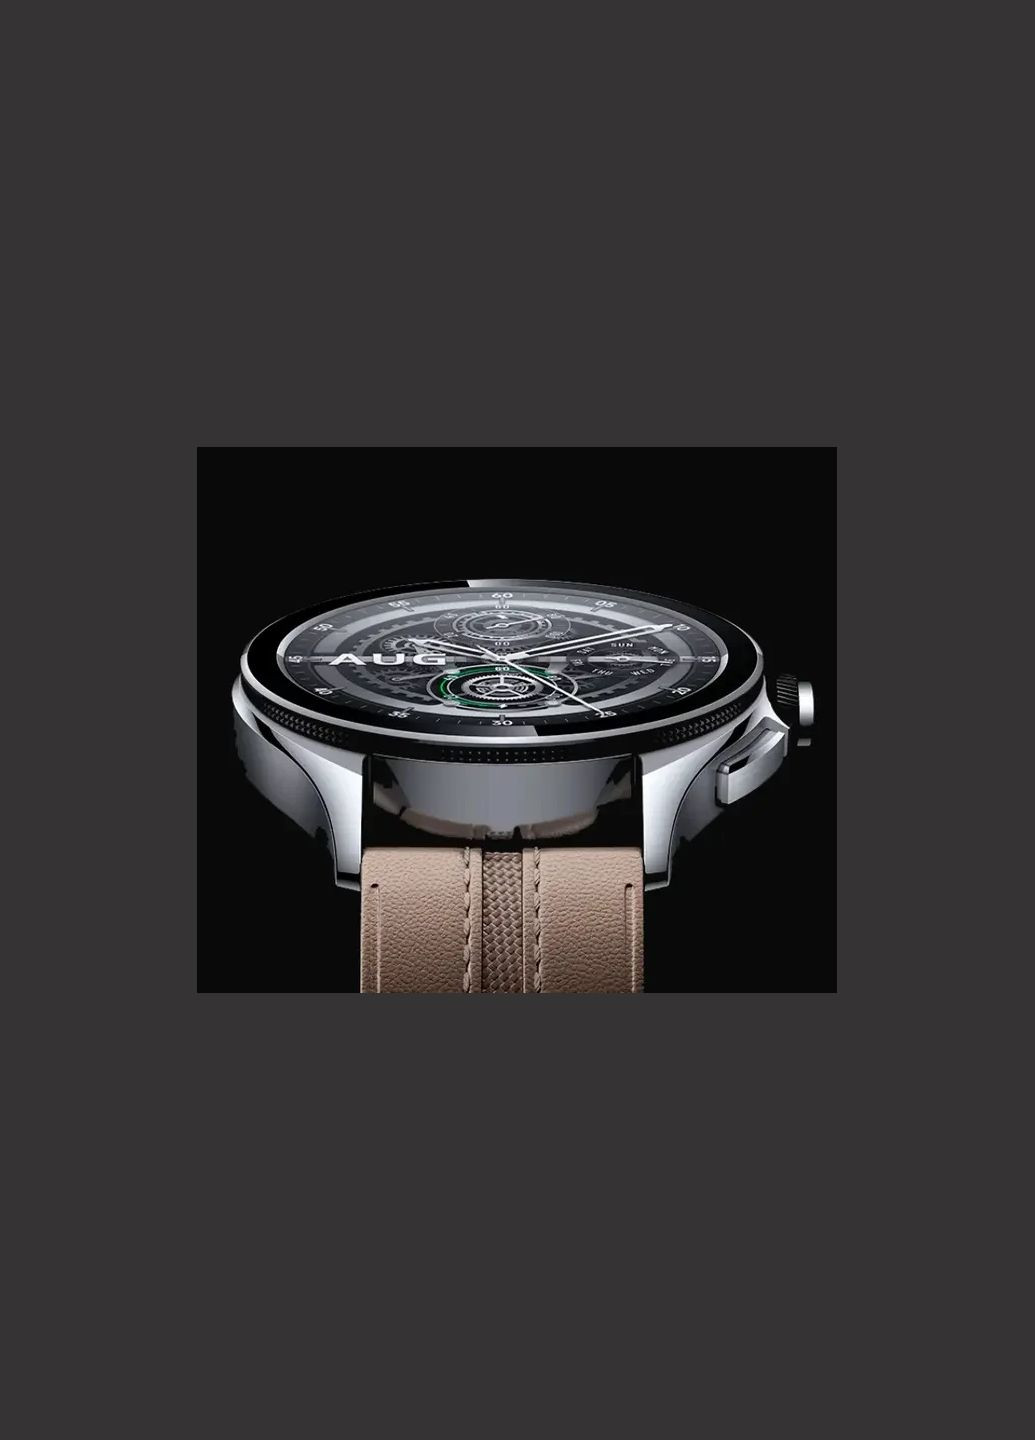 Годинник розумний Watch 2 Pro BHR7216GL сріблястий корпус коричневий ремінець шкіра Xiaomi (280877416)